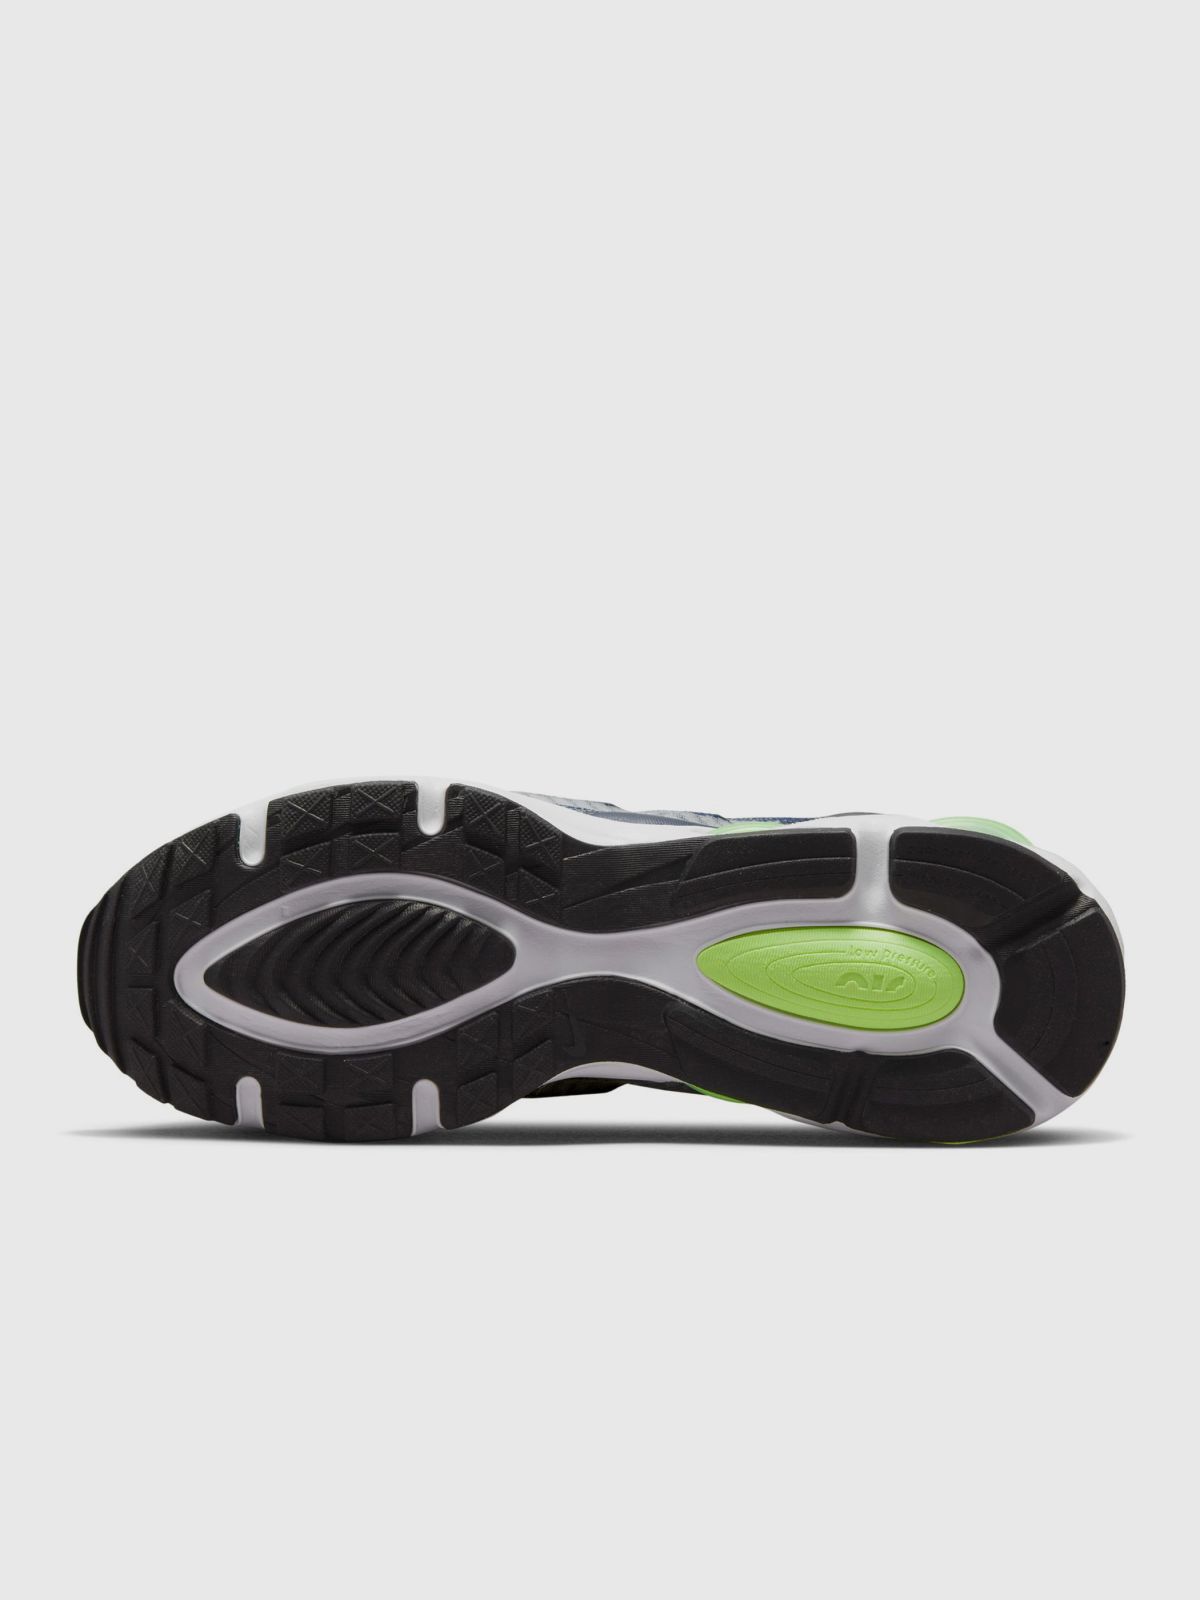  סניקרס Nike Air Max TW / גברים של NIKE